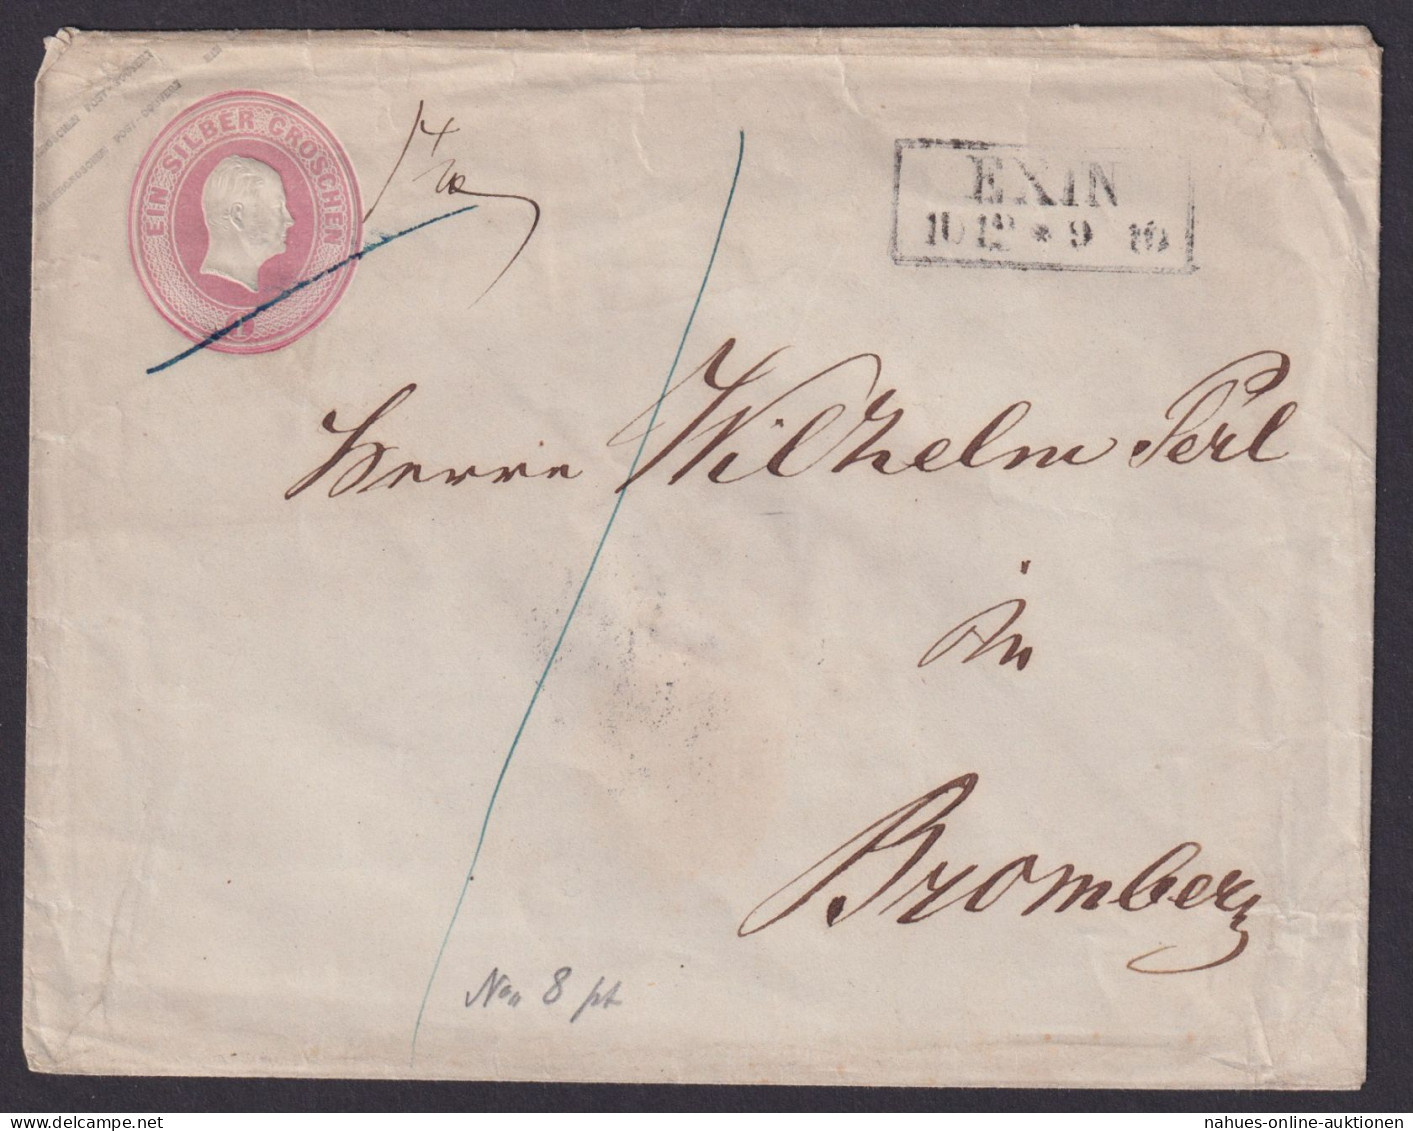 Altdeutschland Preussen Brief Ganzsache 1 Sgr. R" EXIN Posen Nach Bromberg - Postal  Stationery